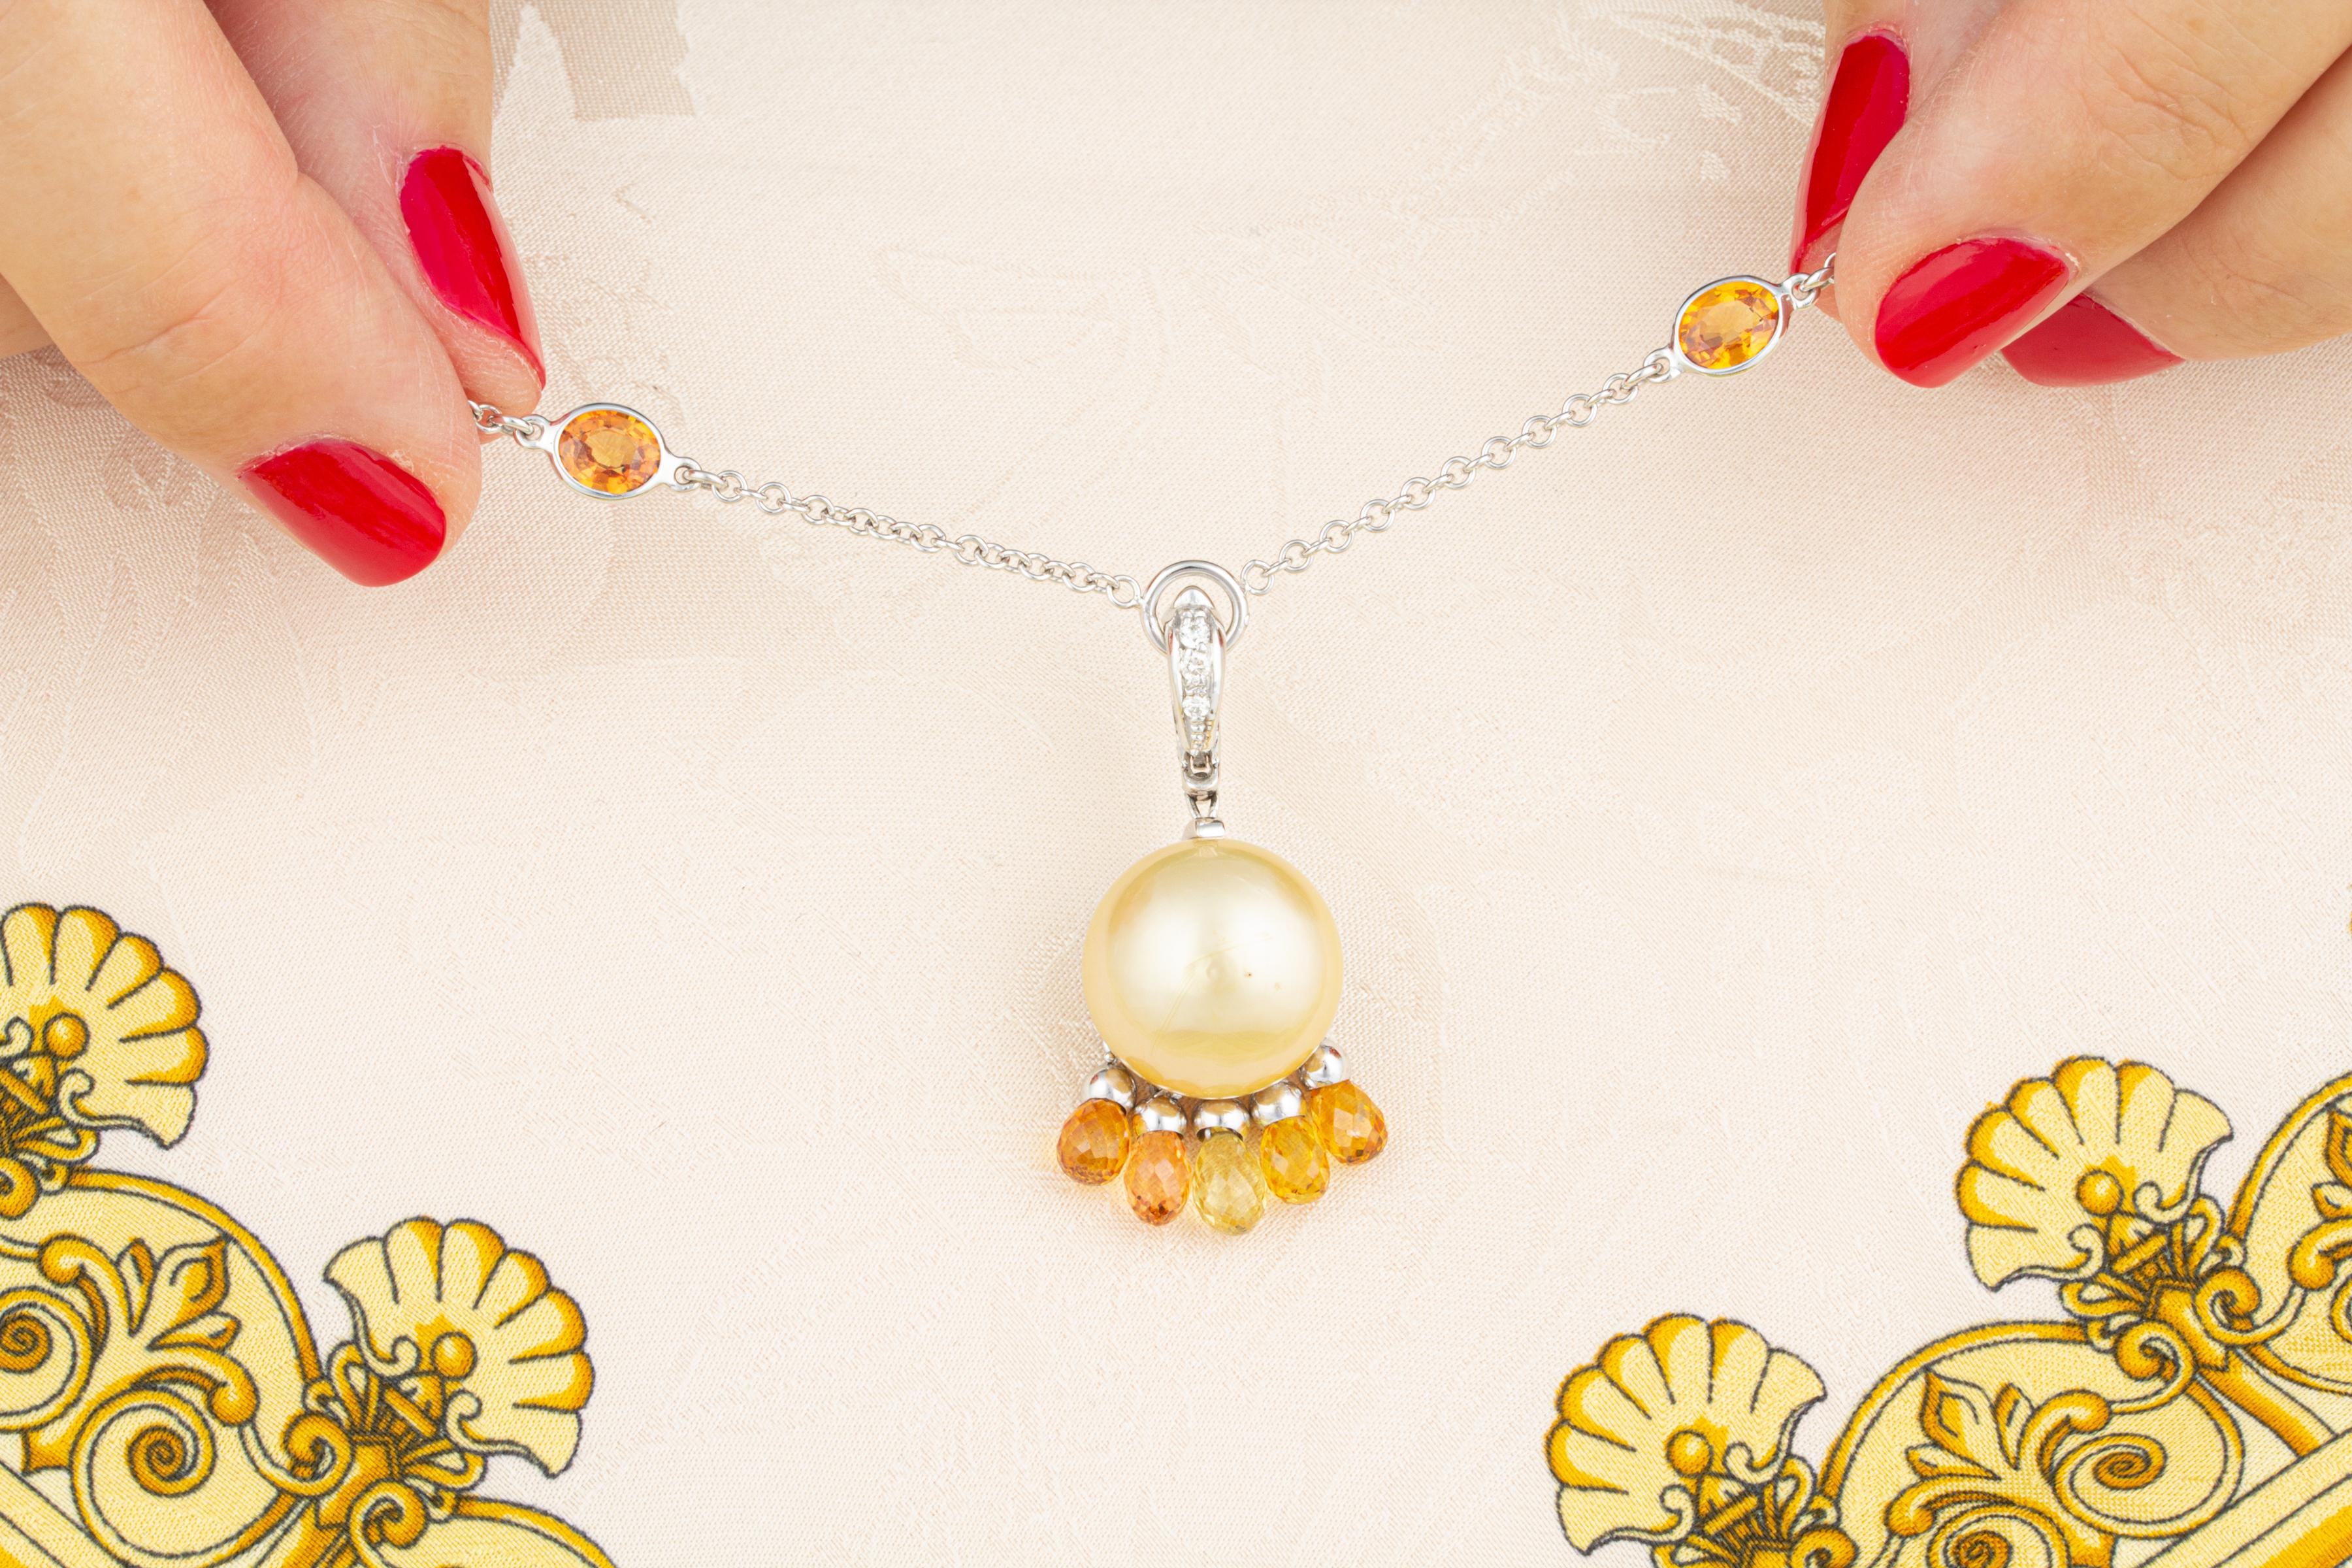 Briolette Cut Ella Gafter Golden Pearl Necklace For Sale